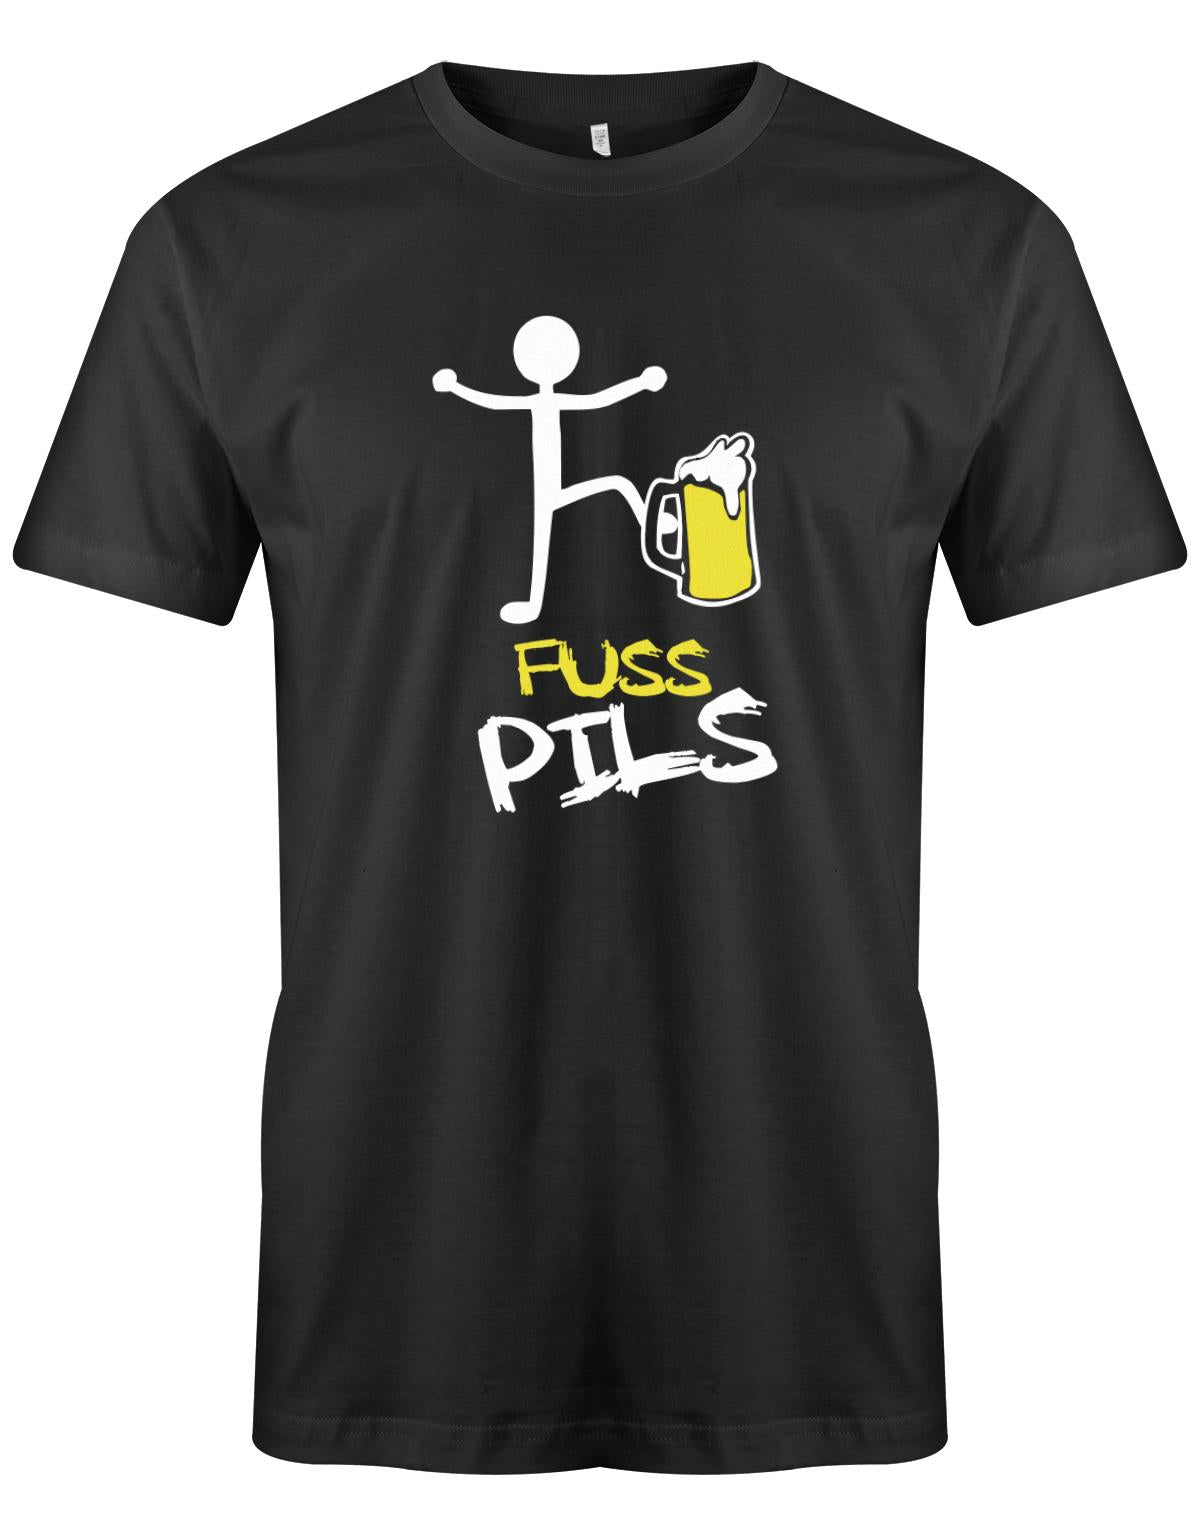 Fusspils-Bier-Herren-Shirt-Schwarz